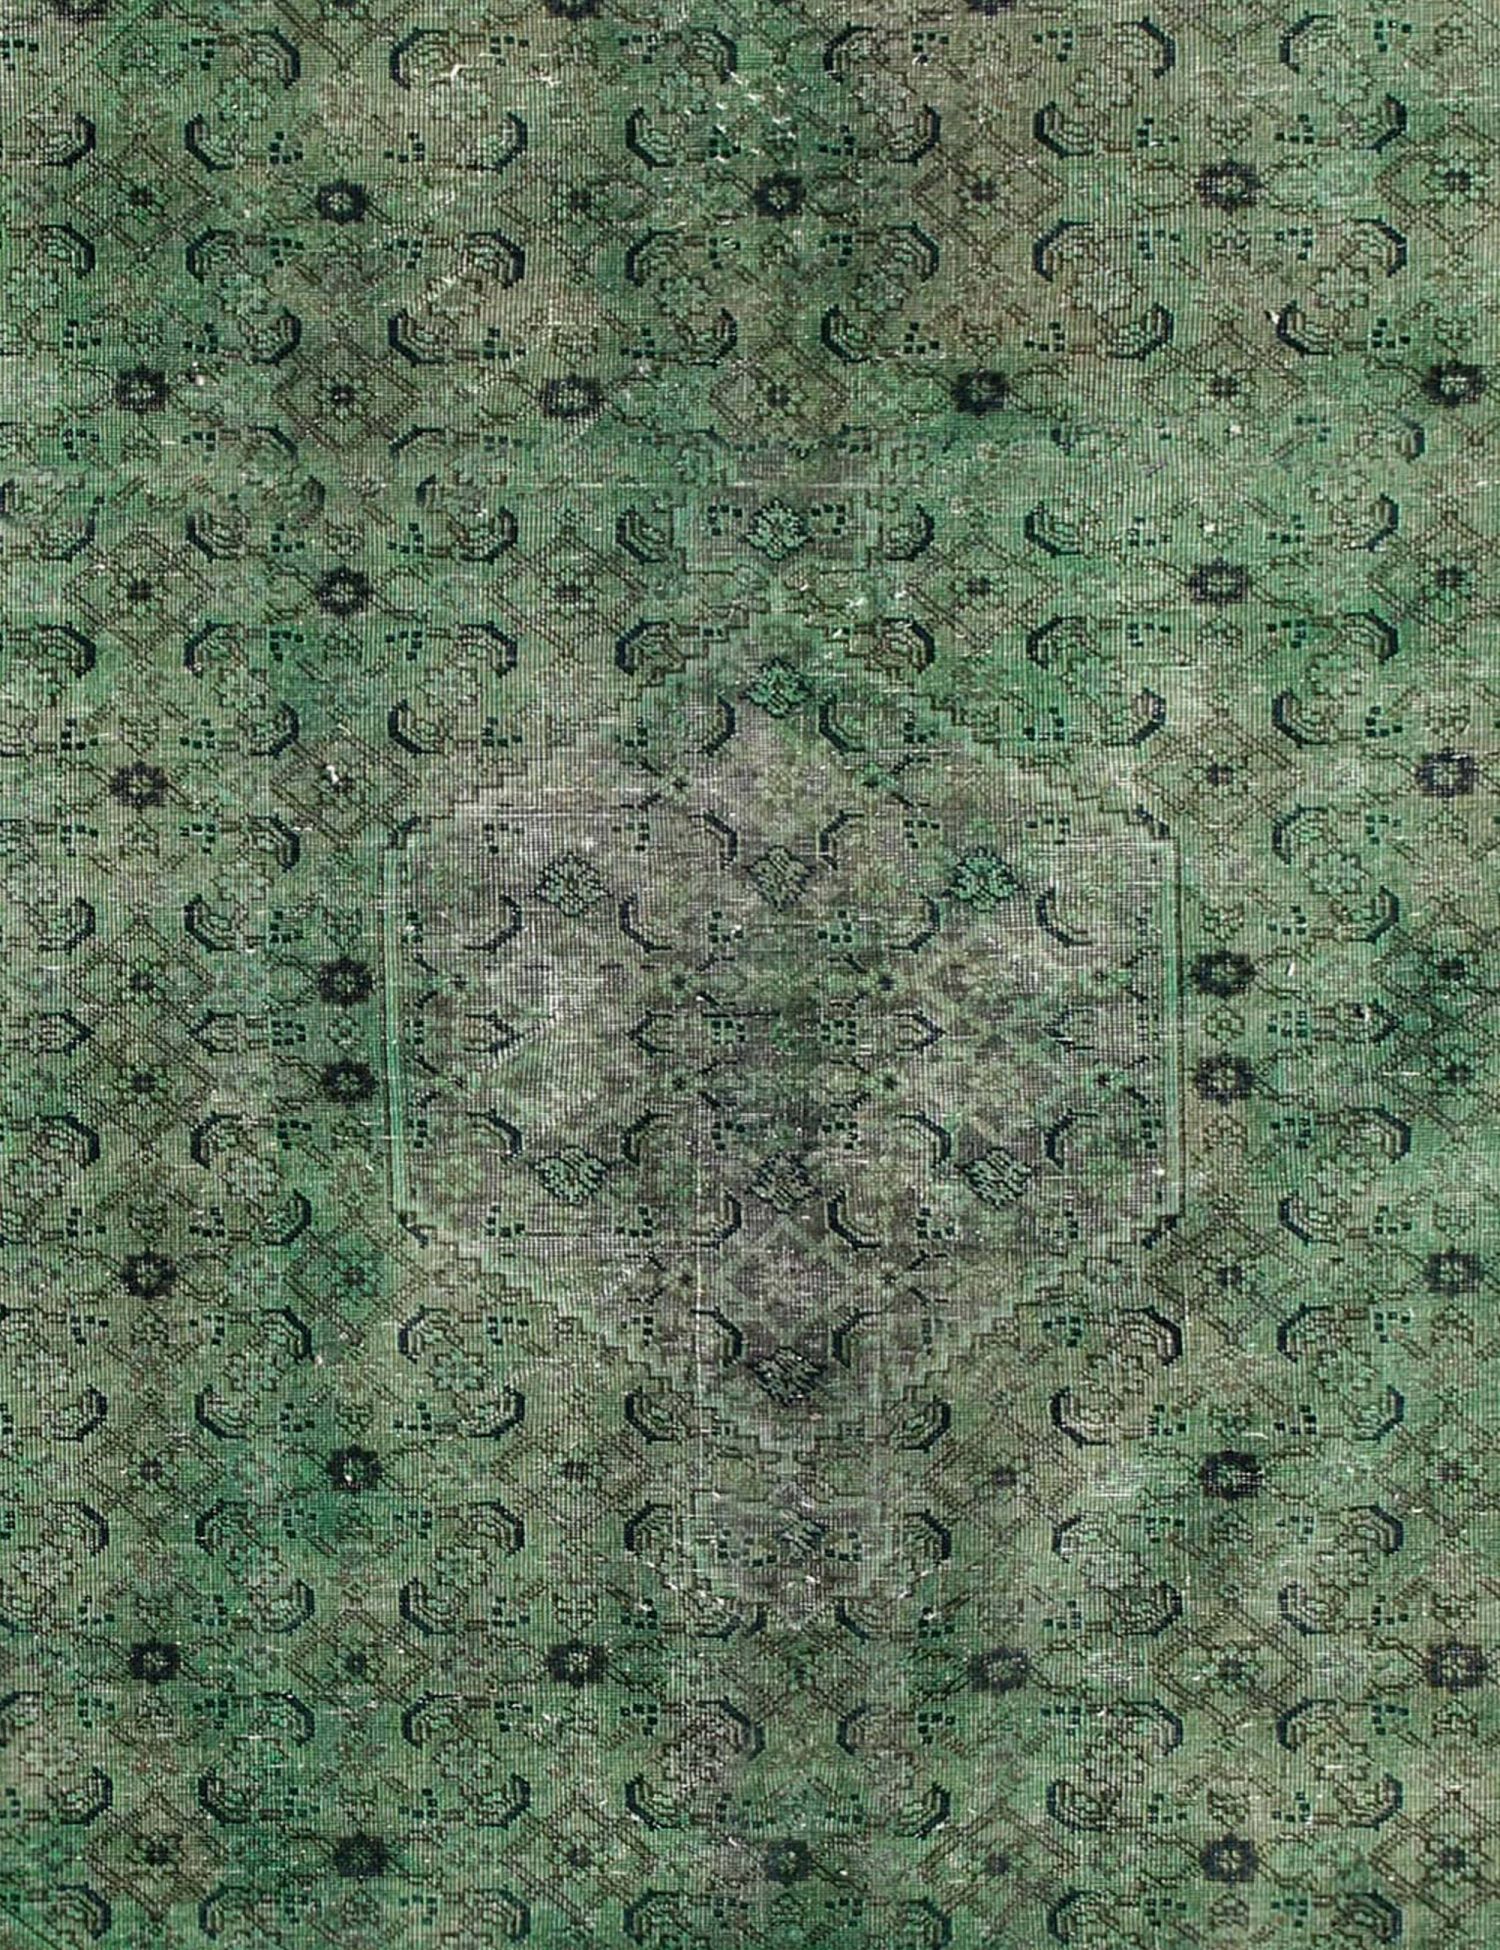 Persischer Vintage Teppich  grün <br/>313 x 213 cm